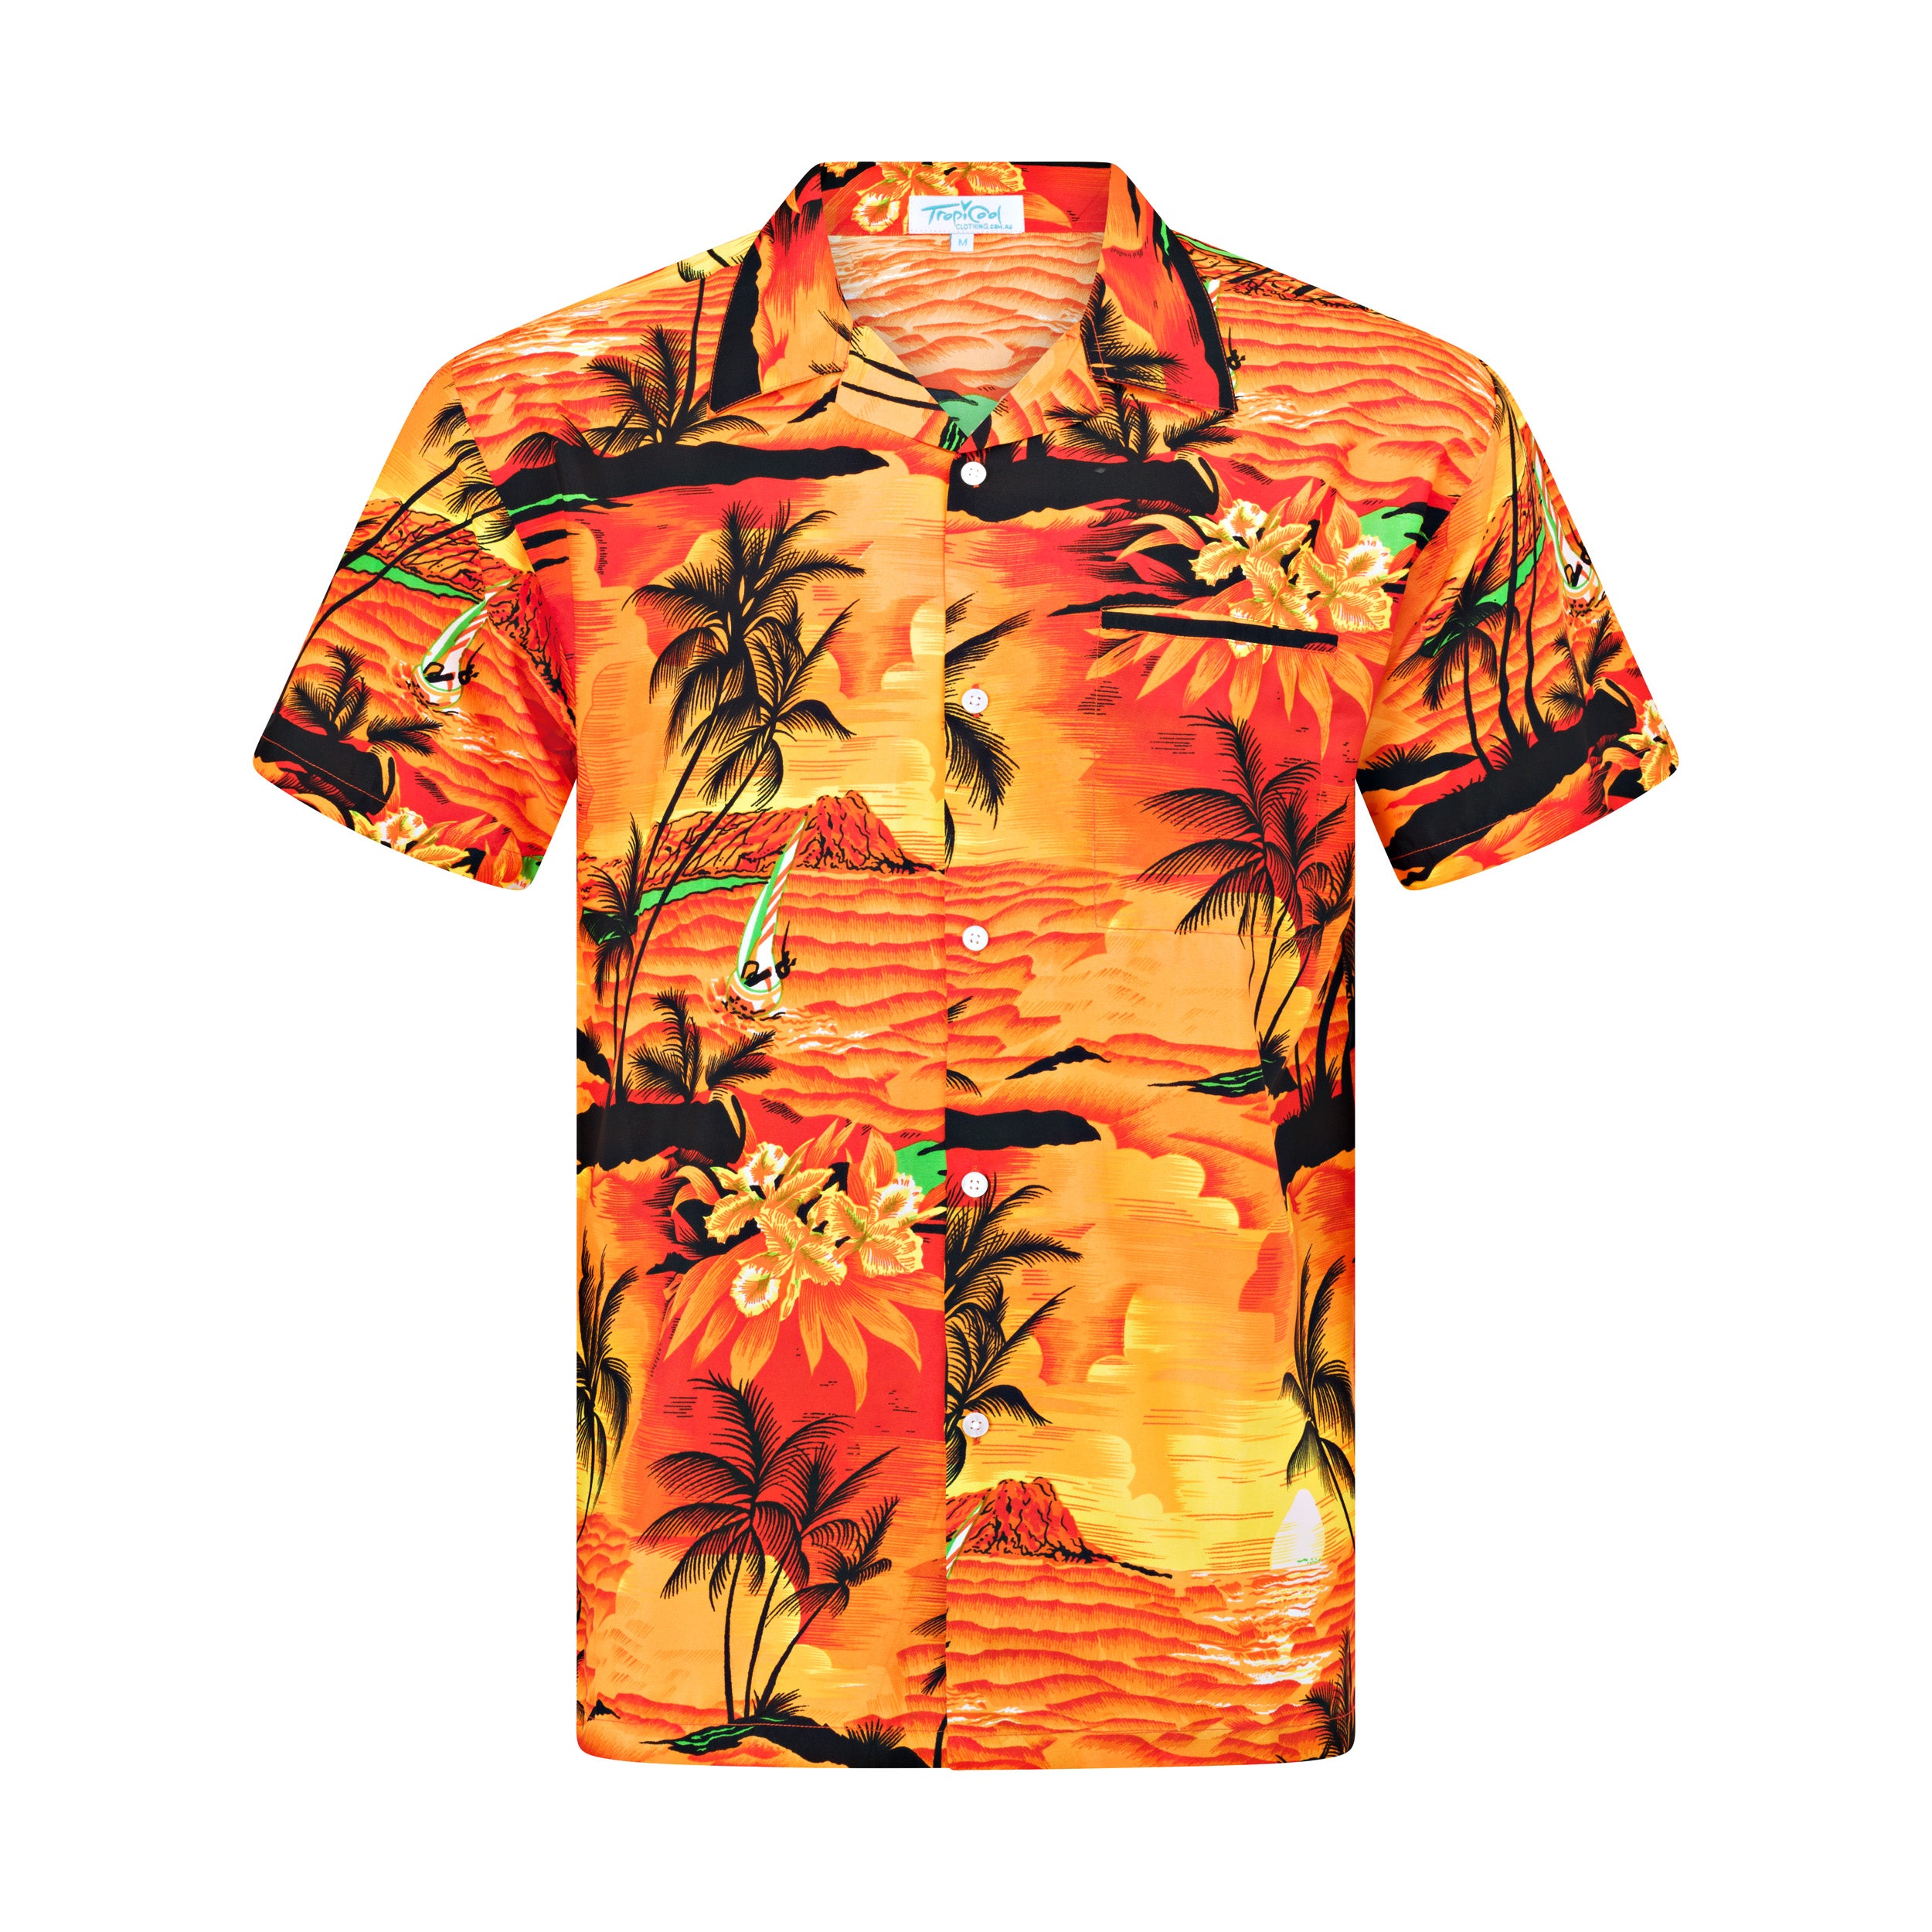 Sunset Orange Adult Shirt